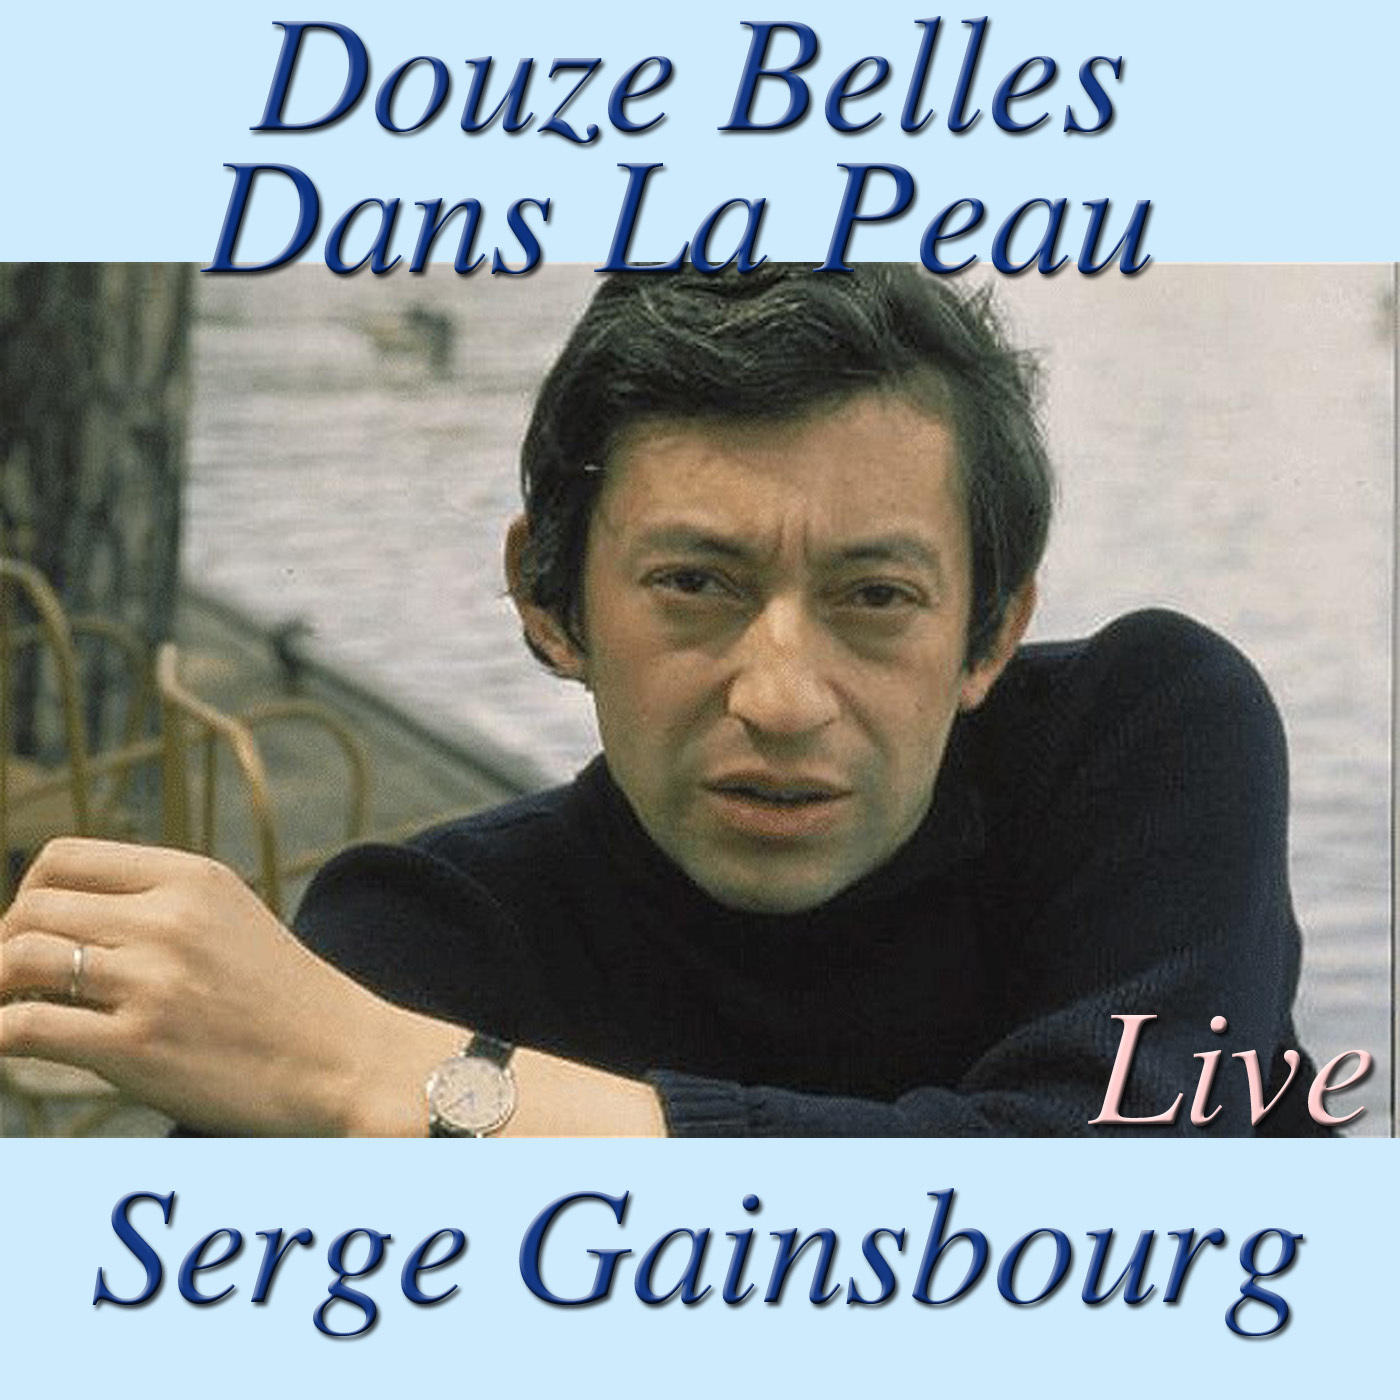 Douze Bells Dans La Peau (Live At The Trois Baudets)